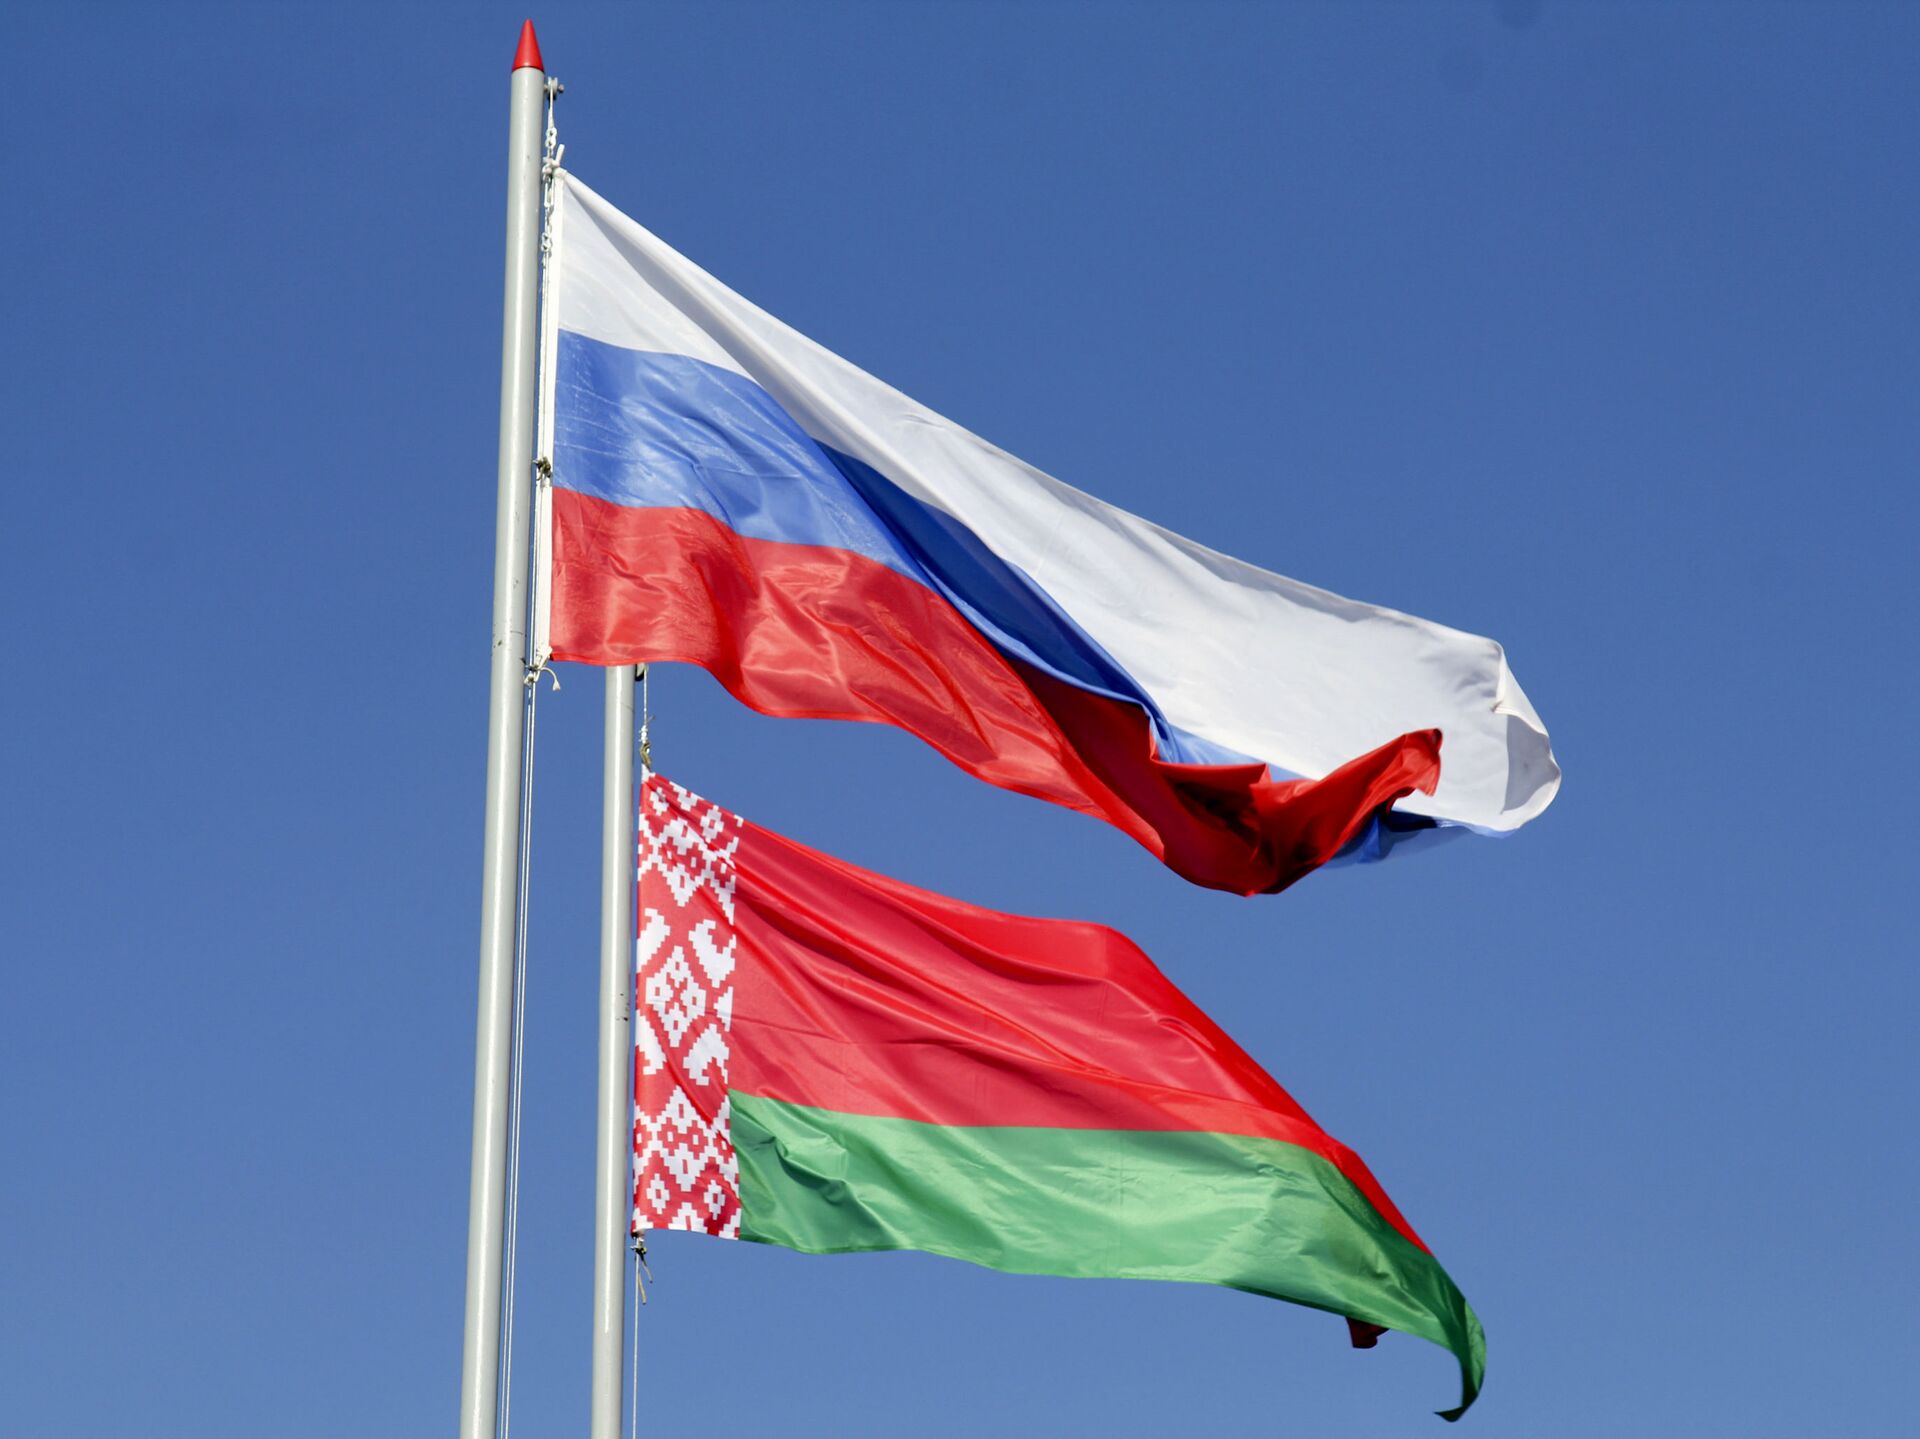 Флаги россии и белоруссии вместе фото